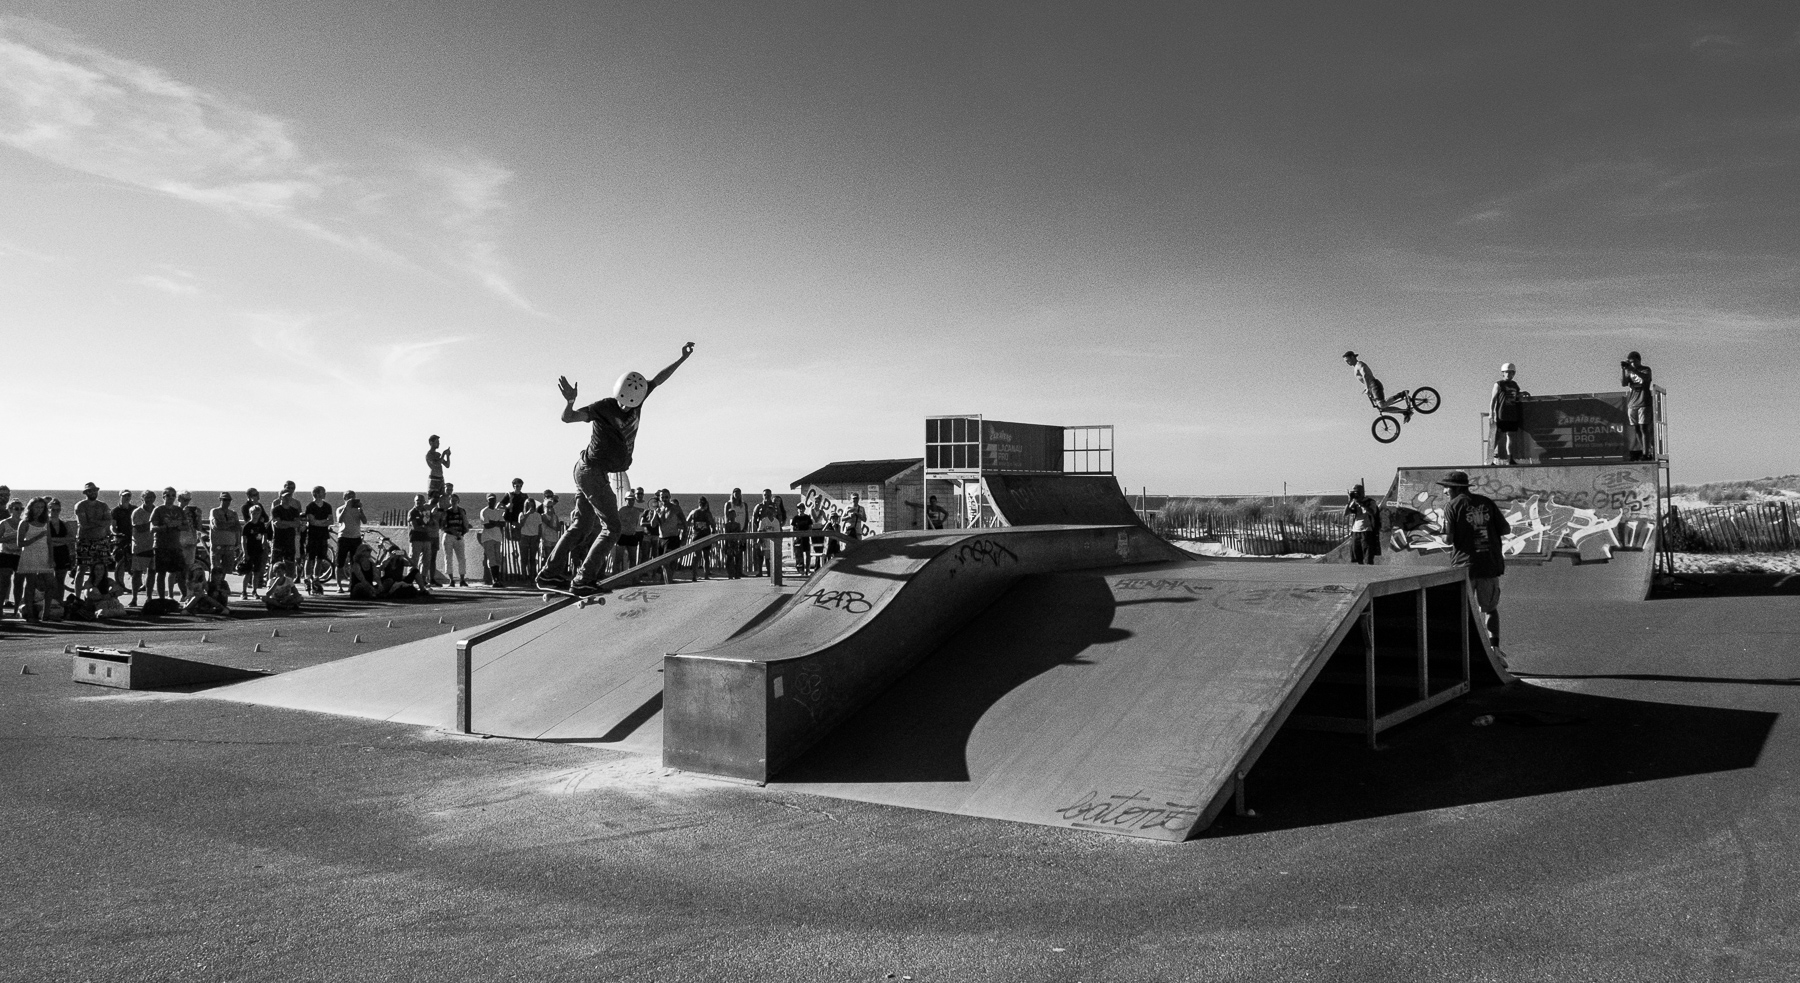 Skateboard et skateboarders Photo Damien Rossier